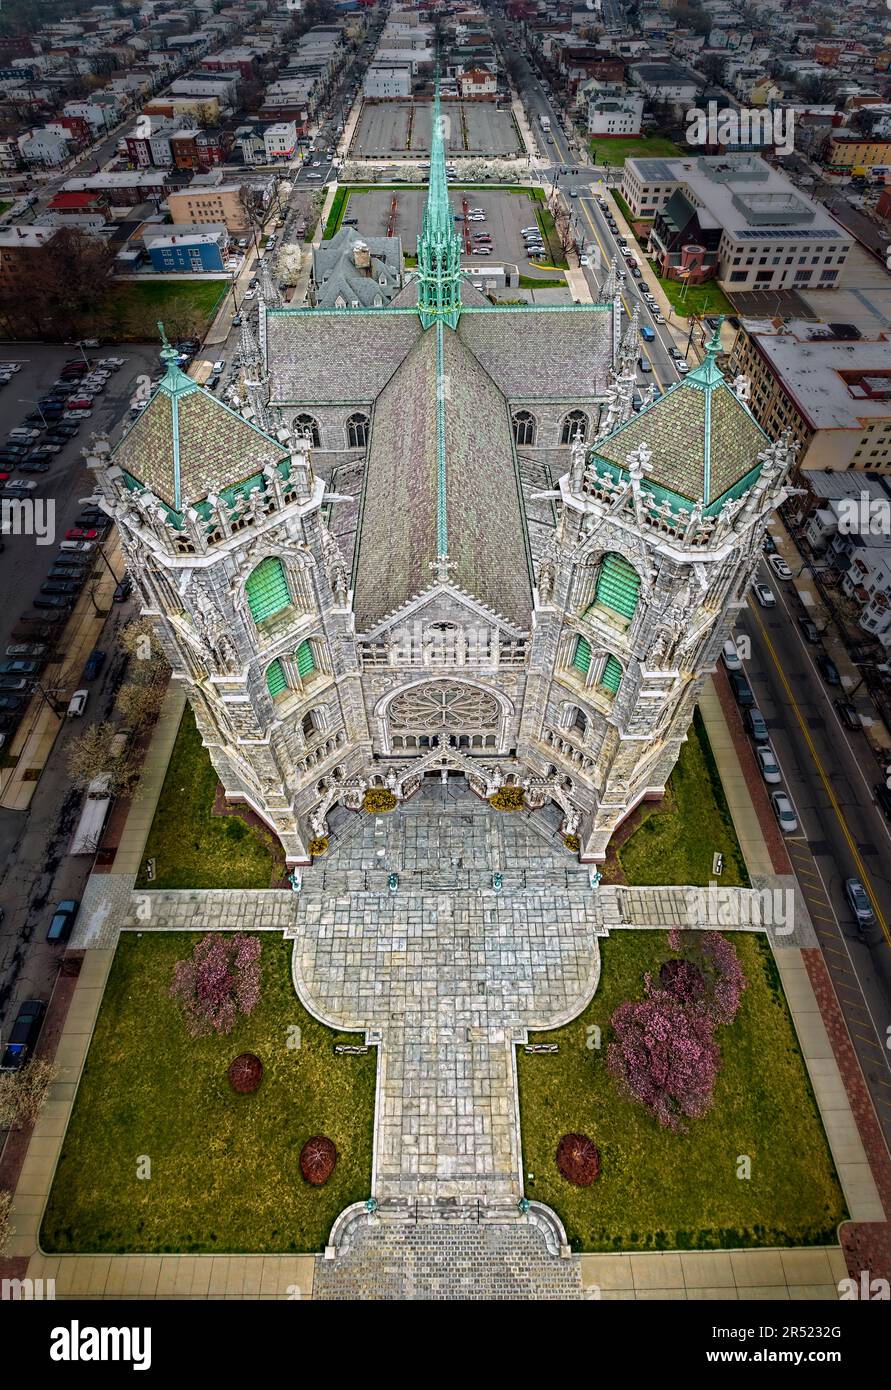 Cathedral Basilica of Sacred Heart NJ - aus der Vogelperspektive sehen Sie die architektonischen Details der 5. größten Kathedrale im United Stat Stockfoto